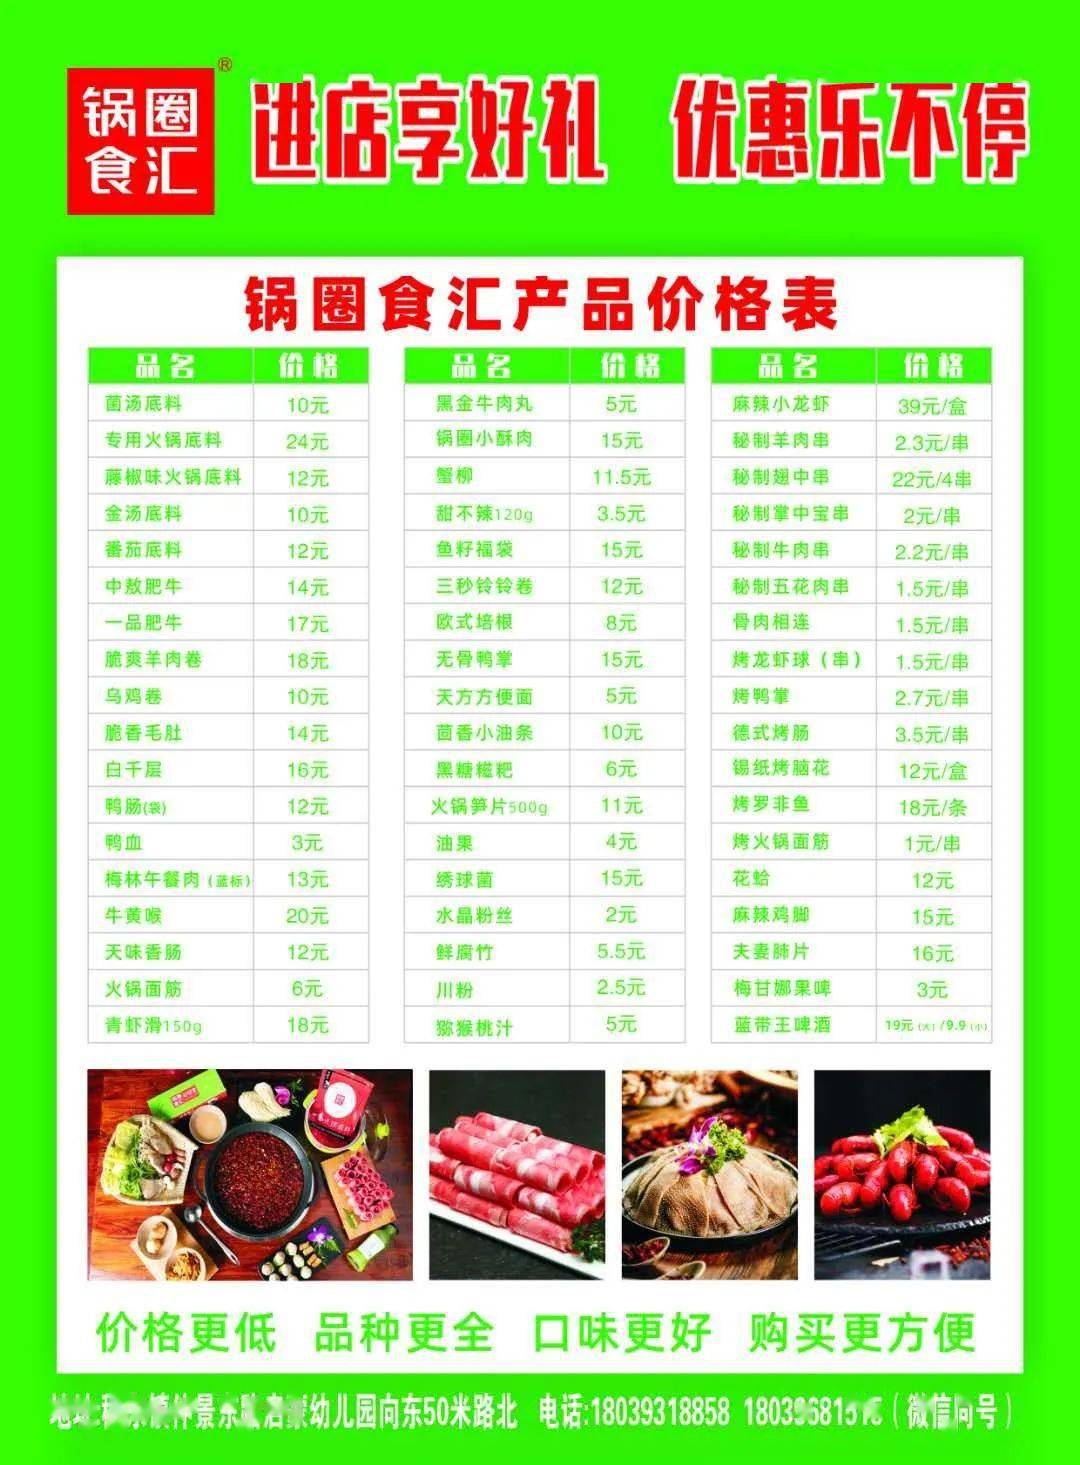 集38个赞,送价值68元鸳鸯锅,7月9日穰东镇锅圈食汇火锅烧烤食材超市